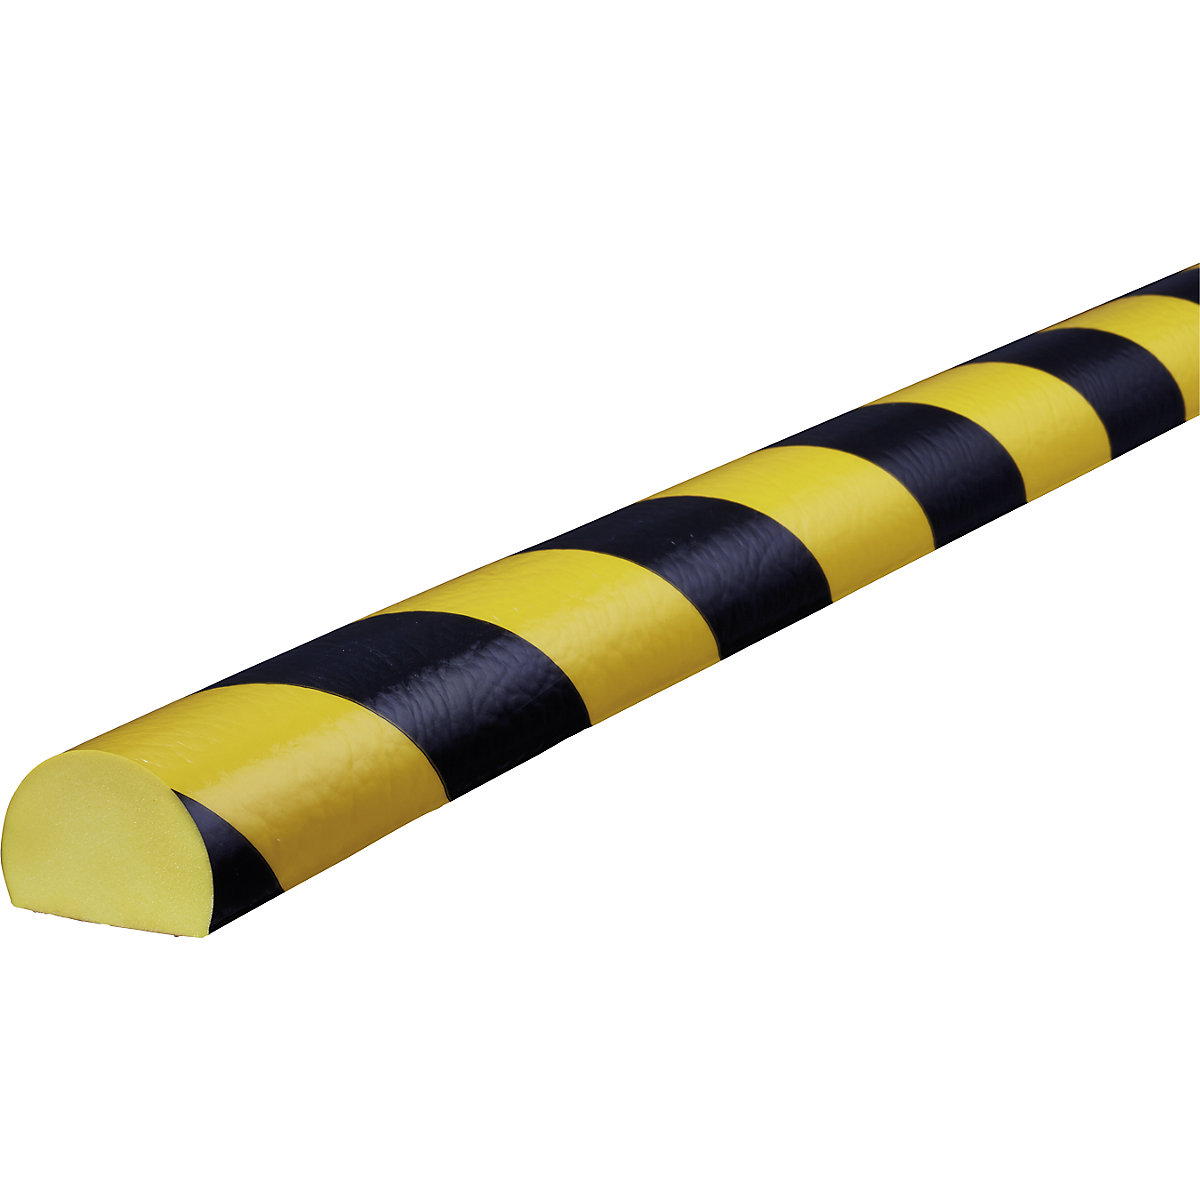 Proteção de superfícies Knuffi® – SHG, tipo C, unidade de 1 m, preto/amarelo-24